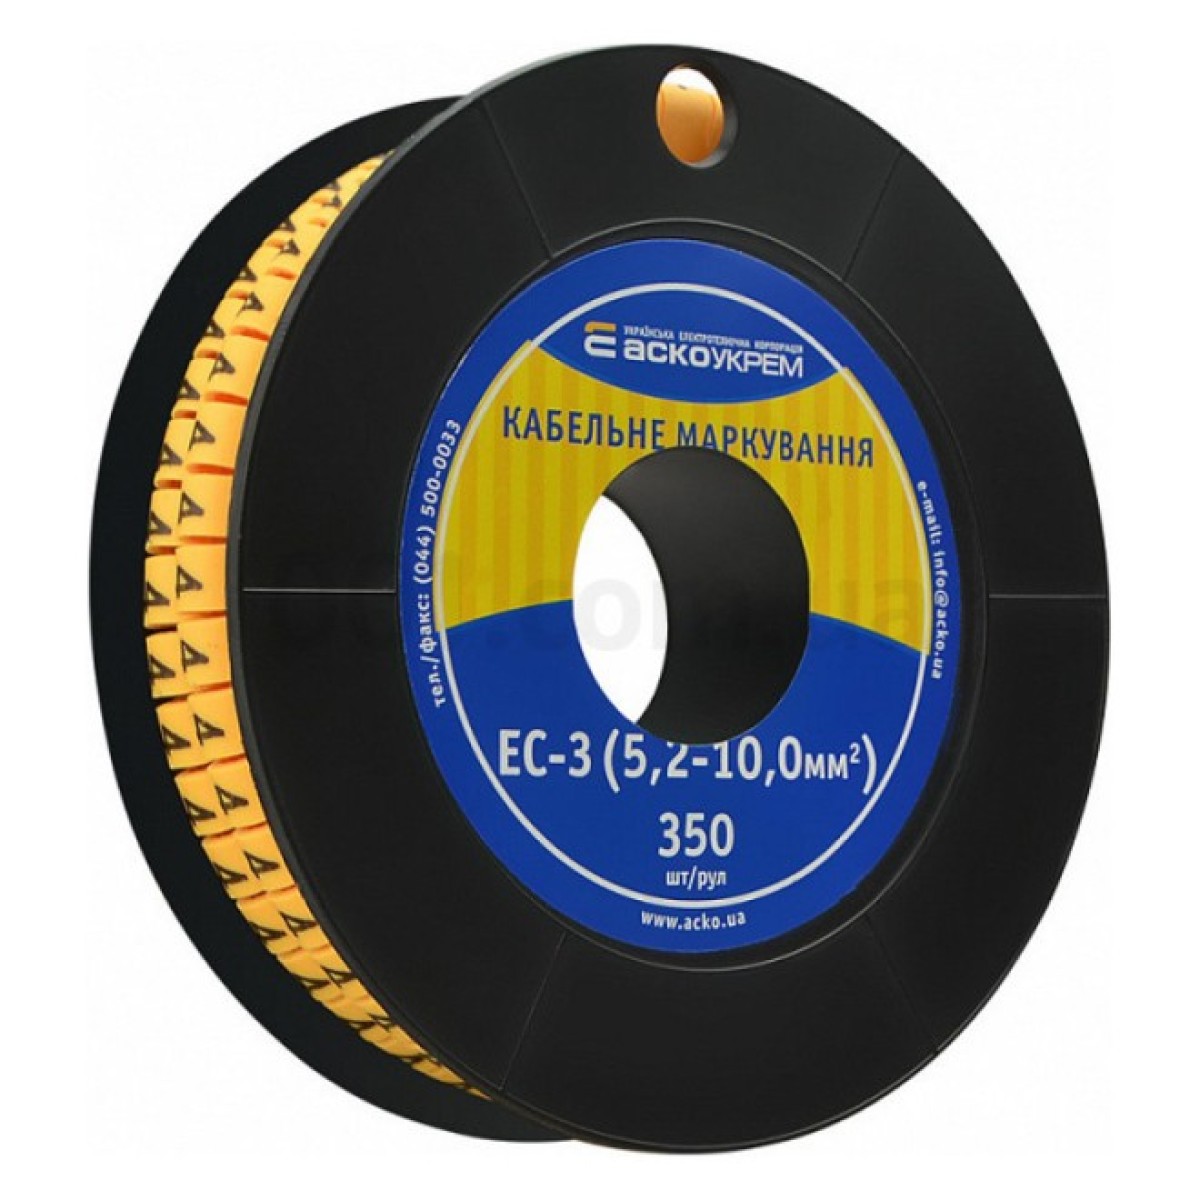 Маркування ЕС-3 для кабелю 5,2-10,0 мм² символ «4» (рулон 250 шт.), АСКО-УКРЕМ 98_98.jpg - фото 1